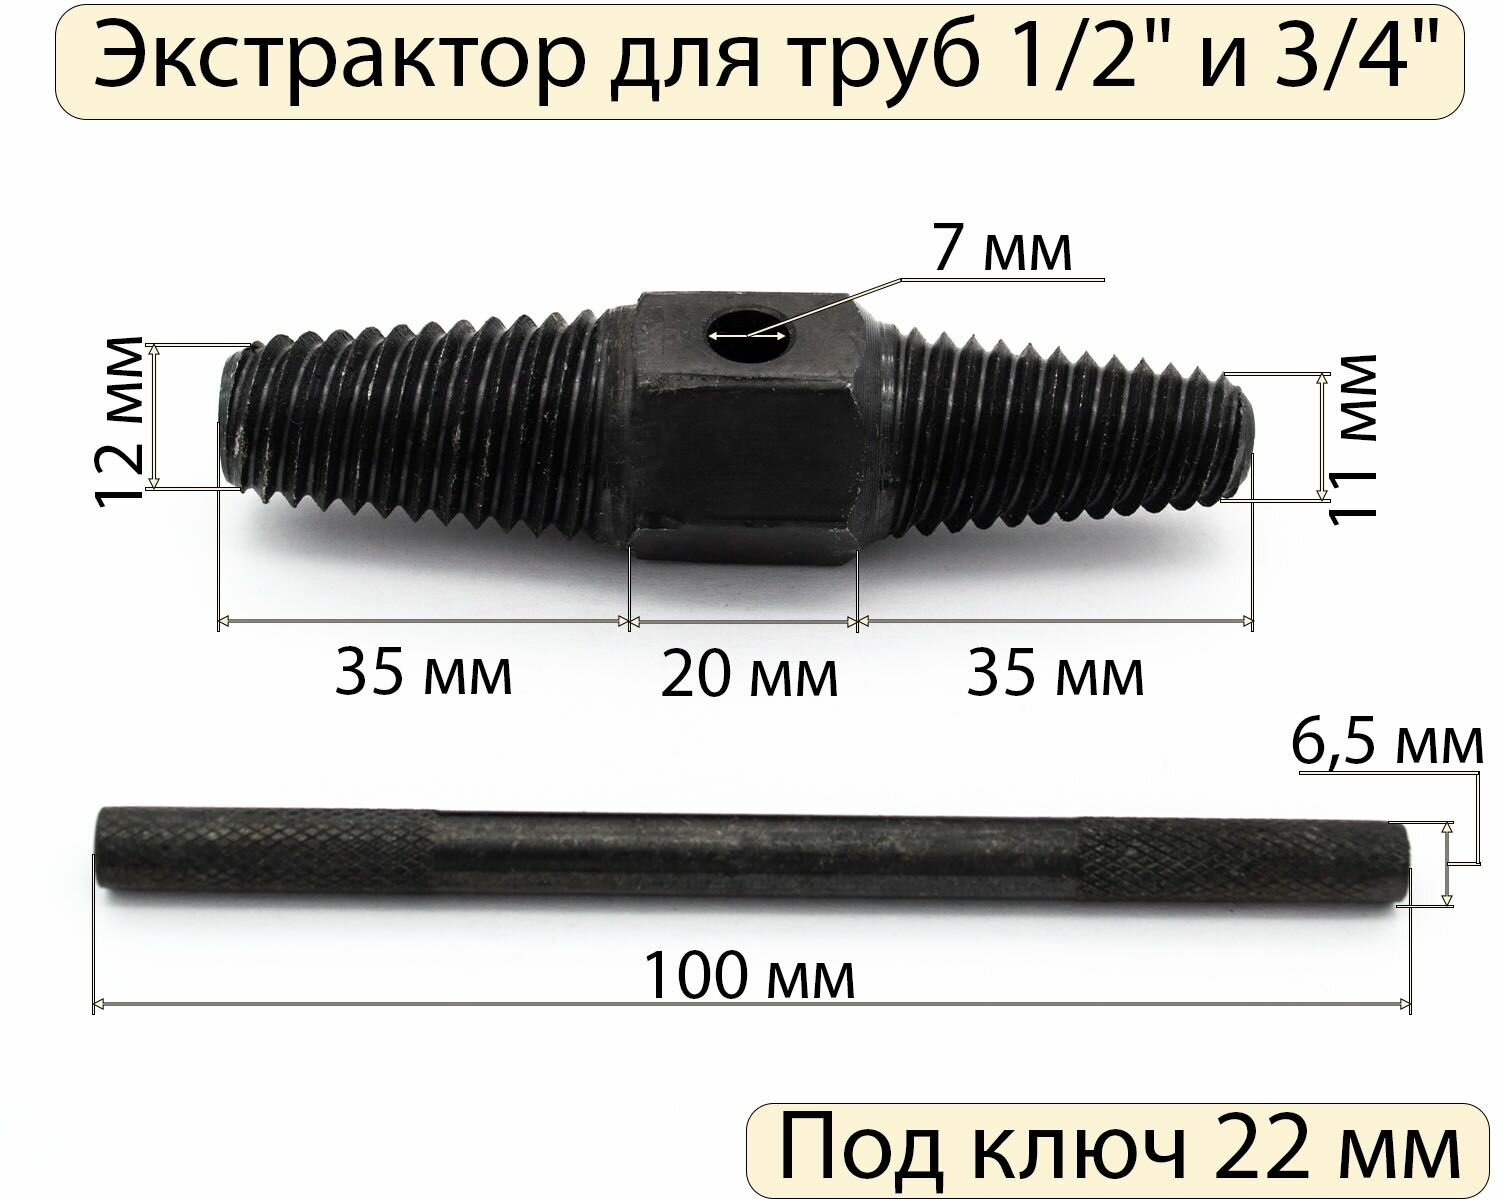 Экстрактор для труб 1/2" (длина резьбы 35 мм) 3/4" (длина резьбы 35 мм)